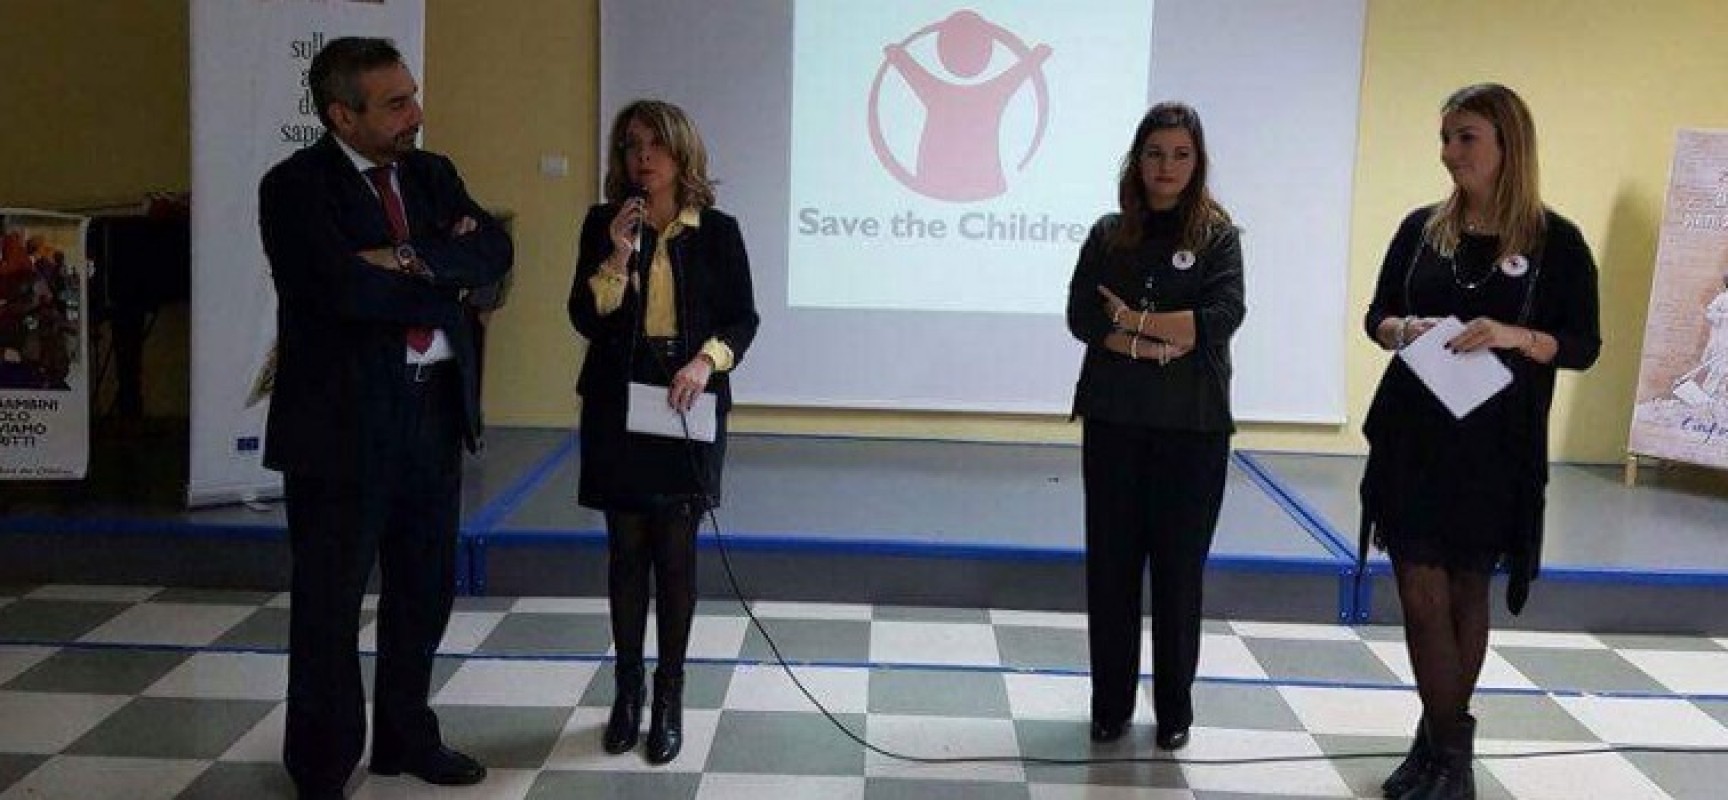 Diritti dell’infanzia ieri incontri nella scuole medie “Monterisi” e “Battisti-Ferraris”